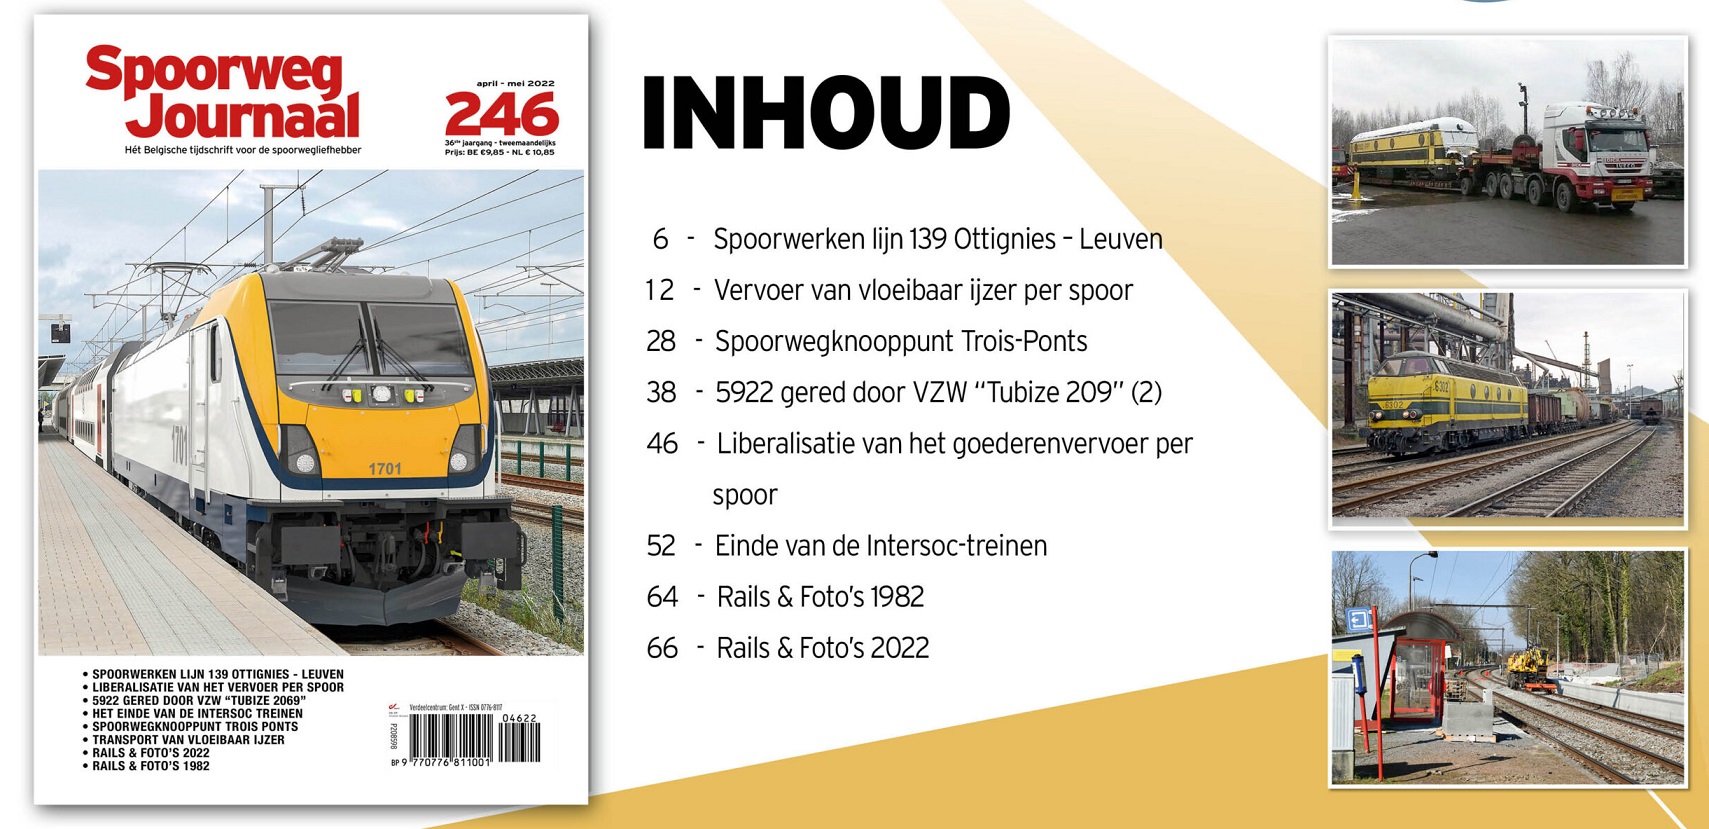 Spoorweg Journal 246 Het Belgisch Tijdschrift voor de spoorwegliefhebber - niederländische/flämische Ausgabe